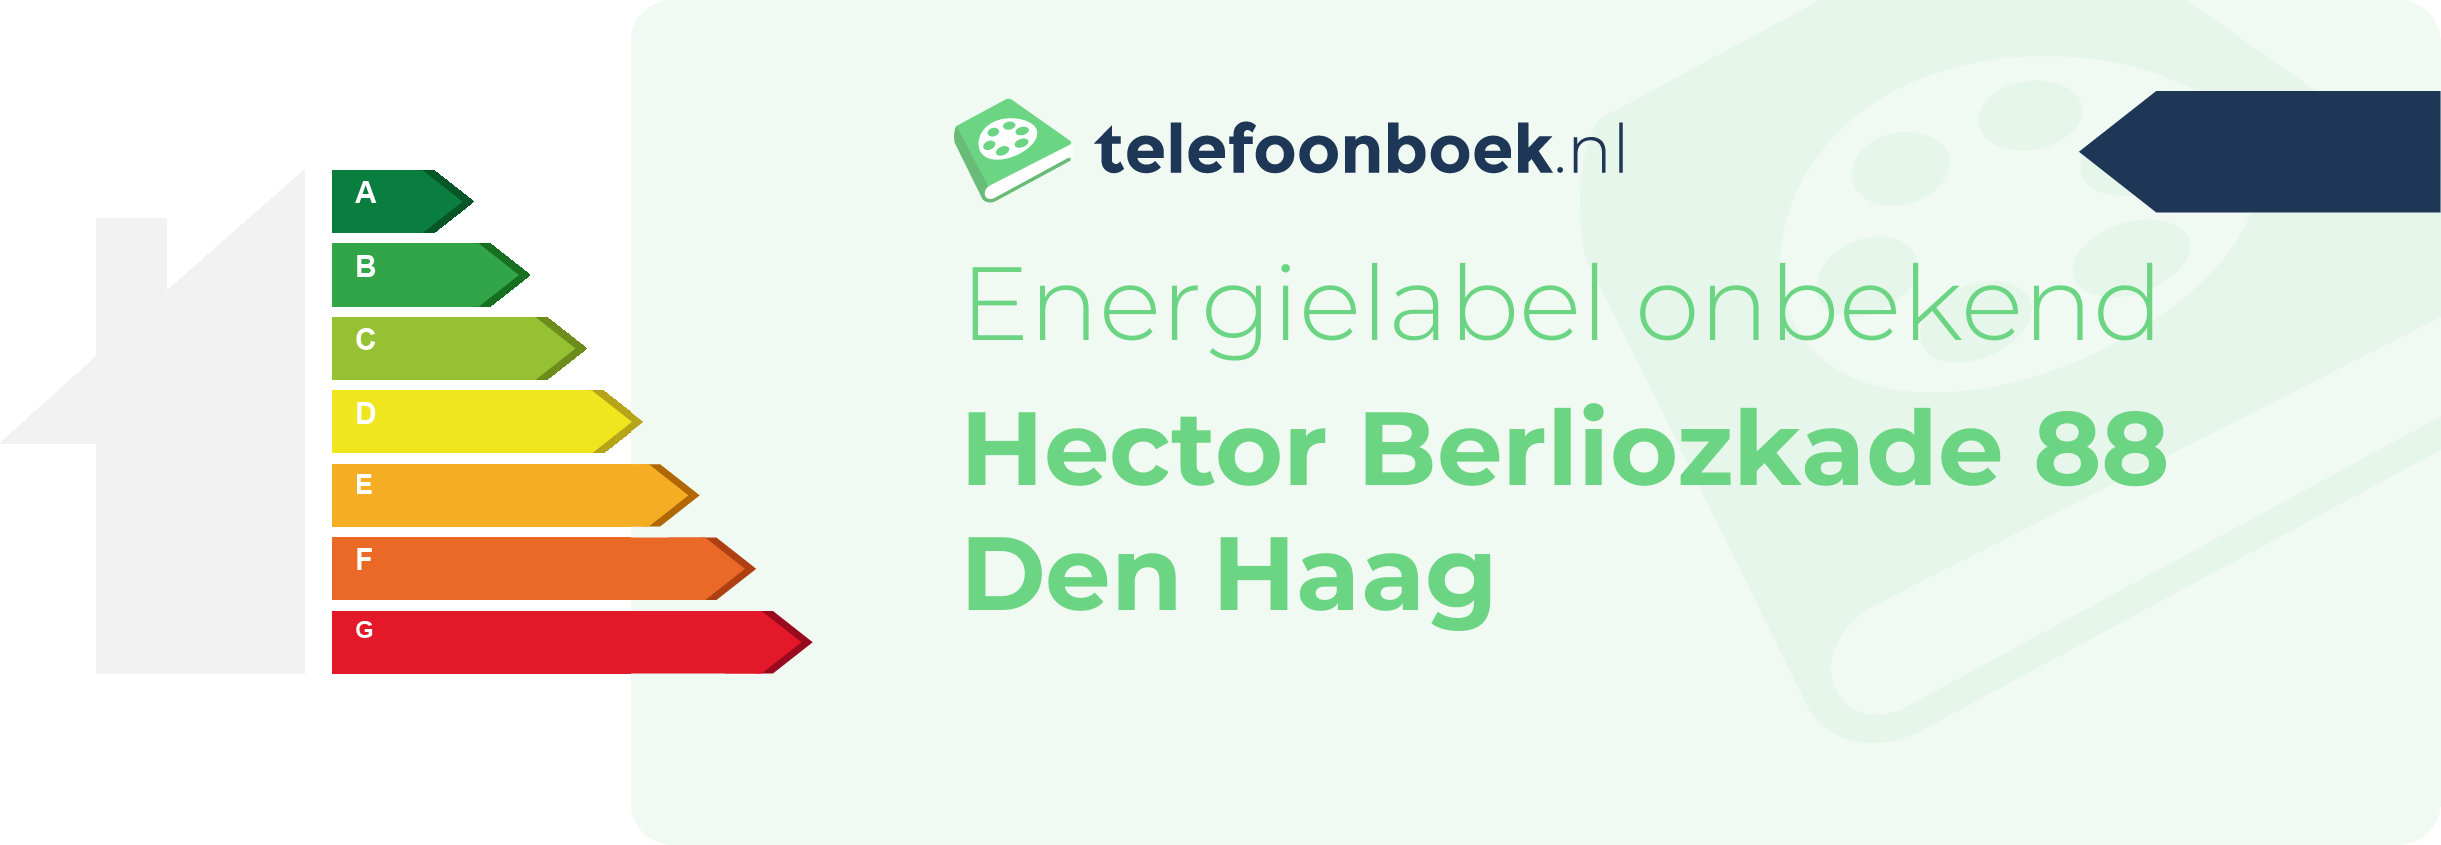 Energielabel Hector Berliozkade 88 Den Haag